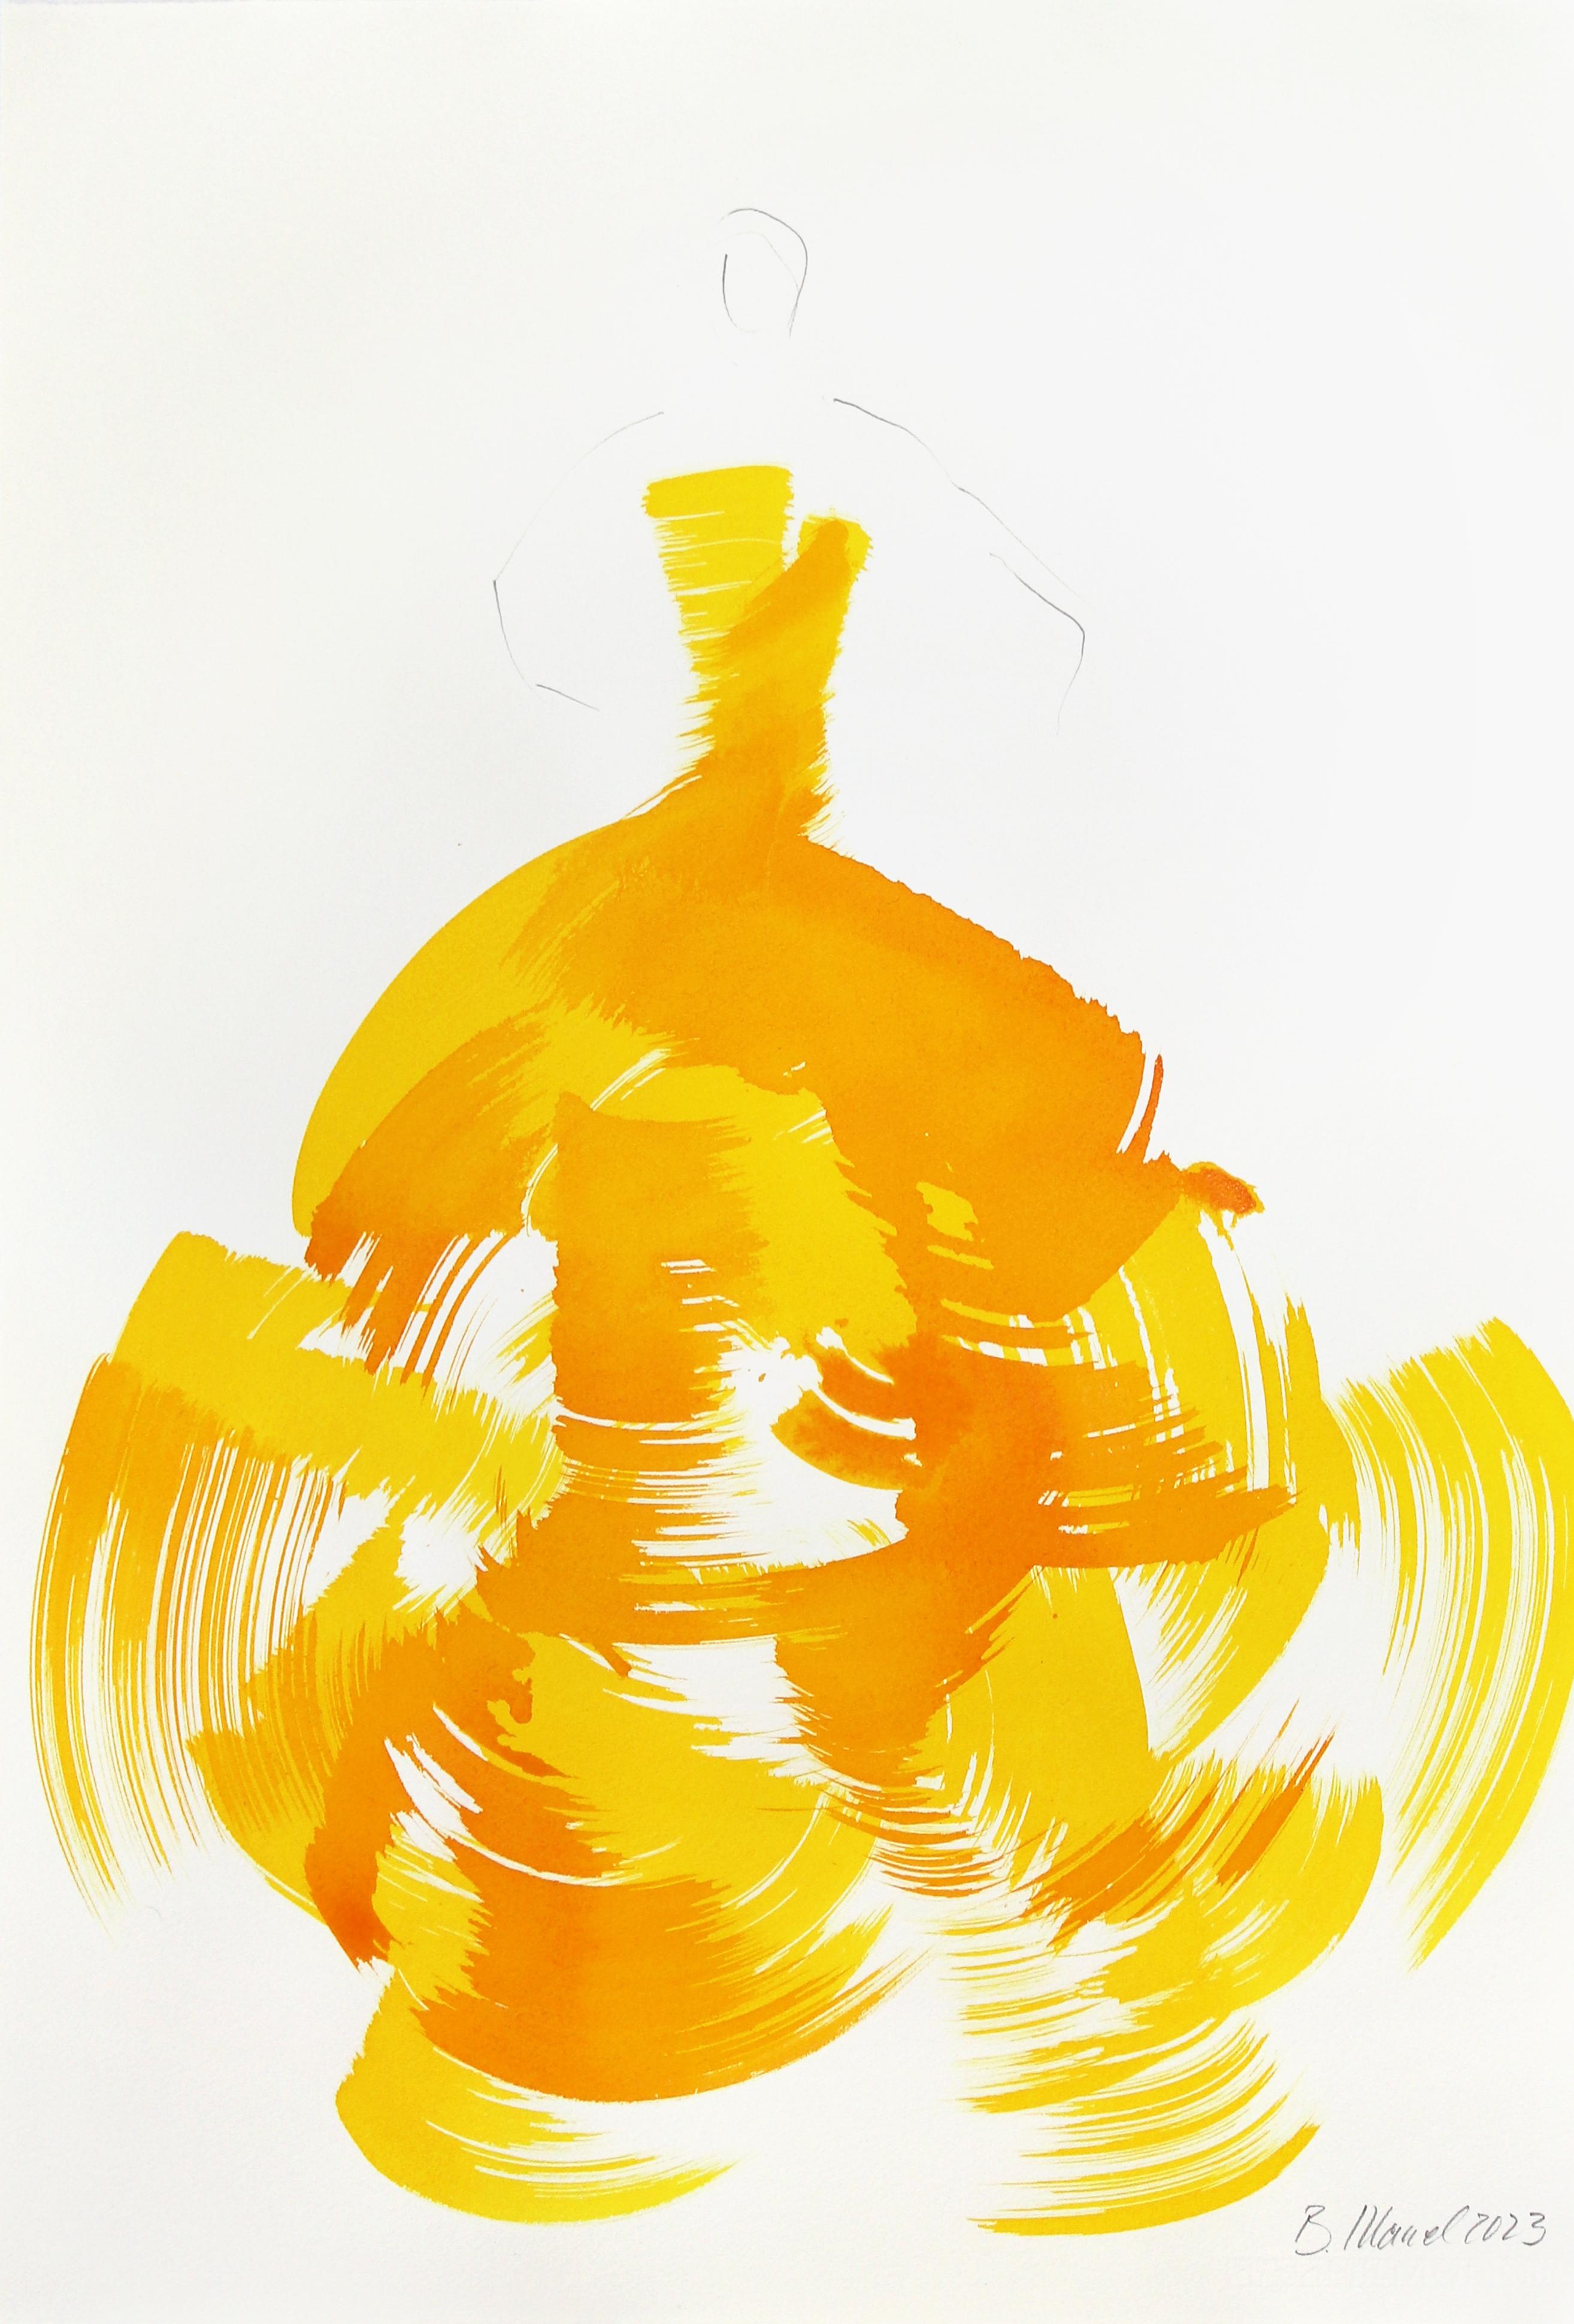 Bettina Mauel Figurative Painting - The Yellow Dress 5 - Yellown Minimalist Figurative Original Ink Painting